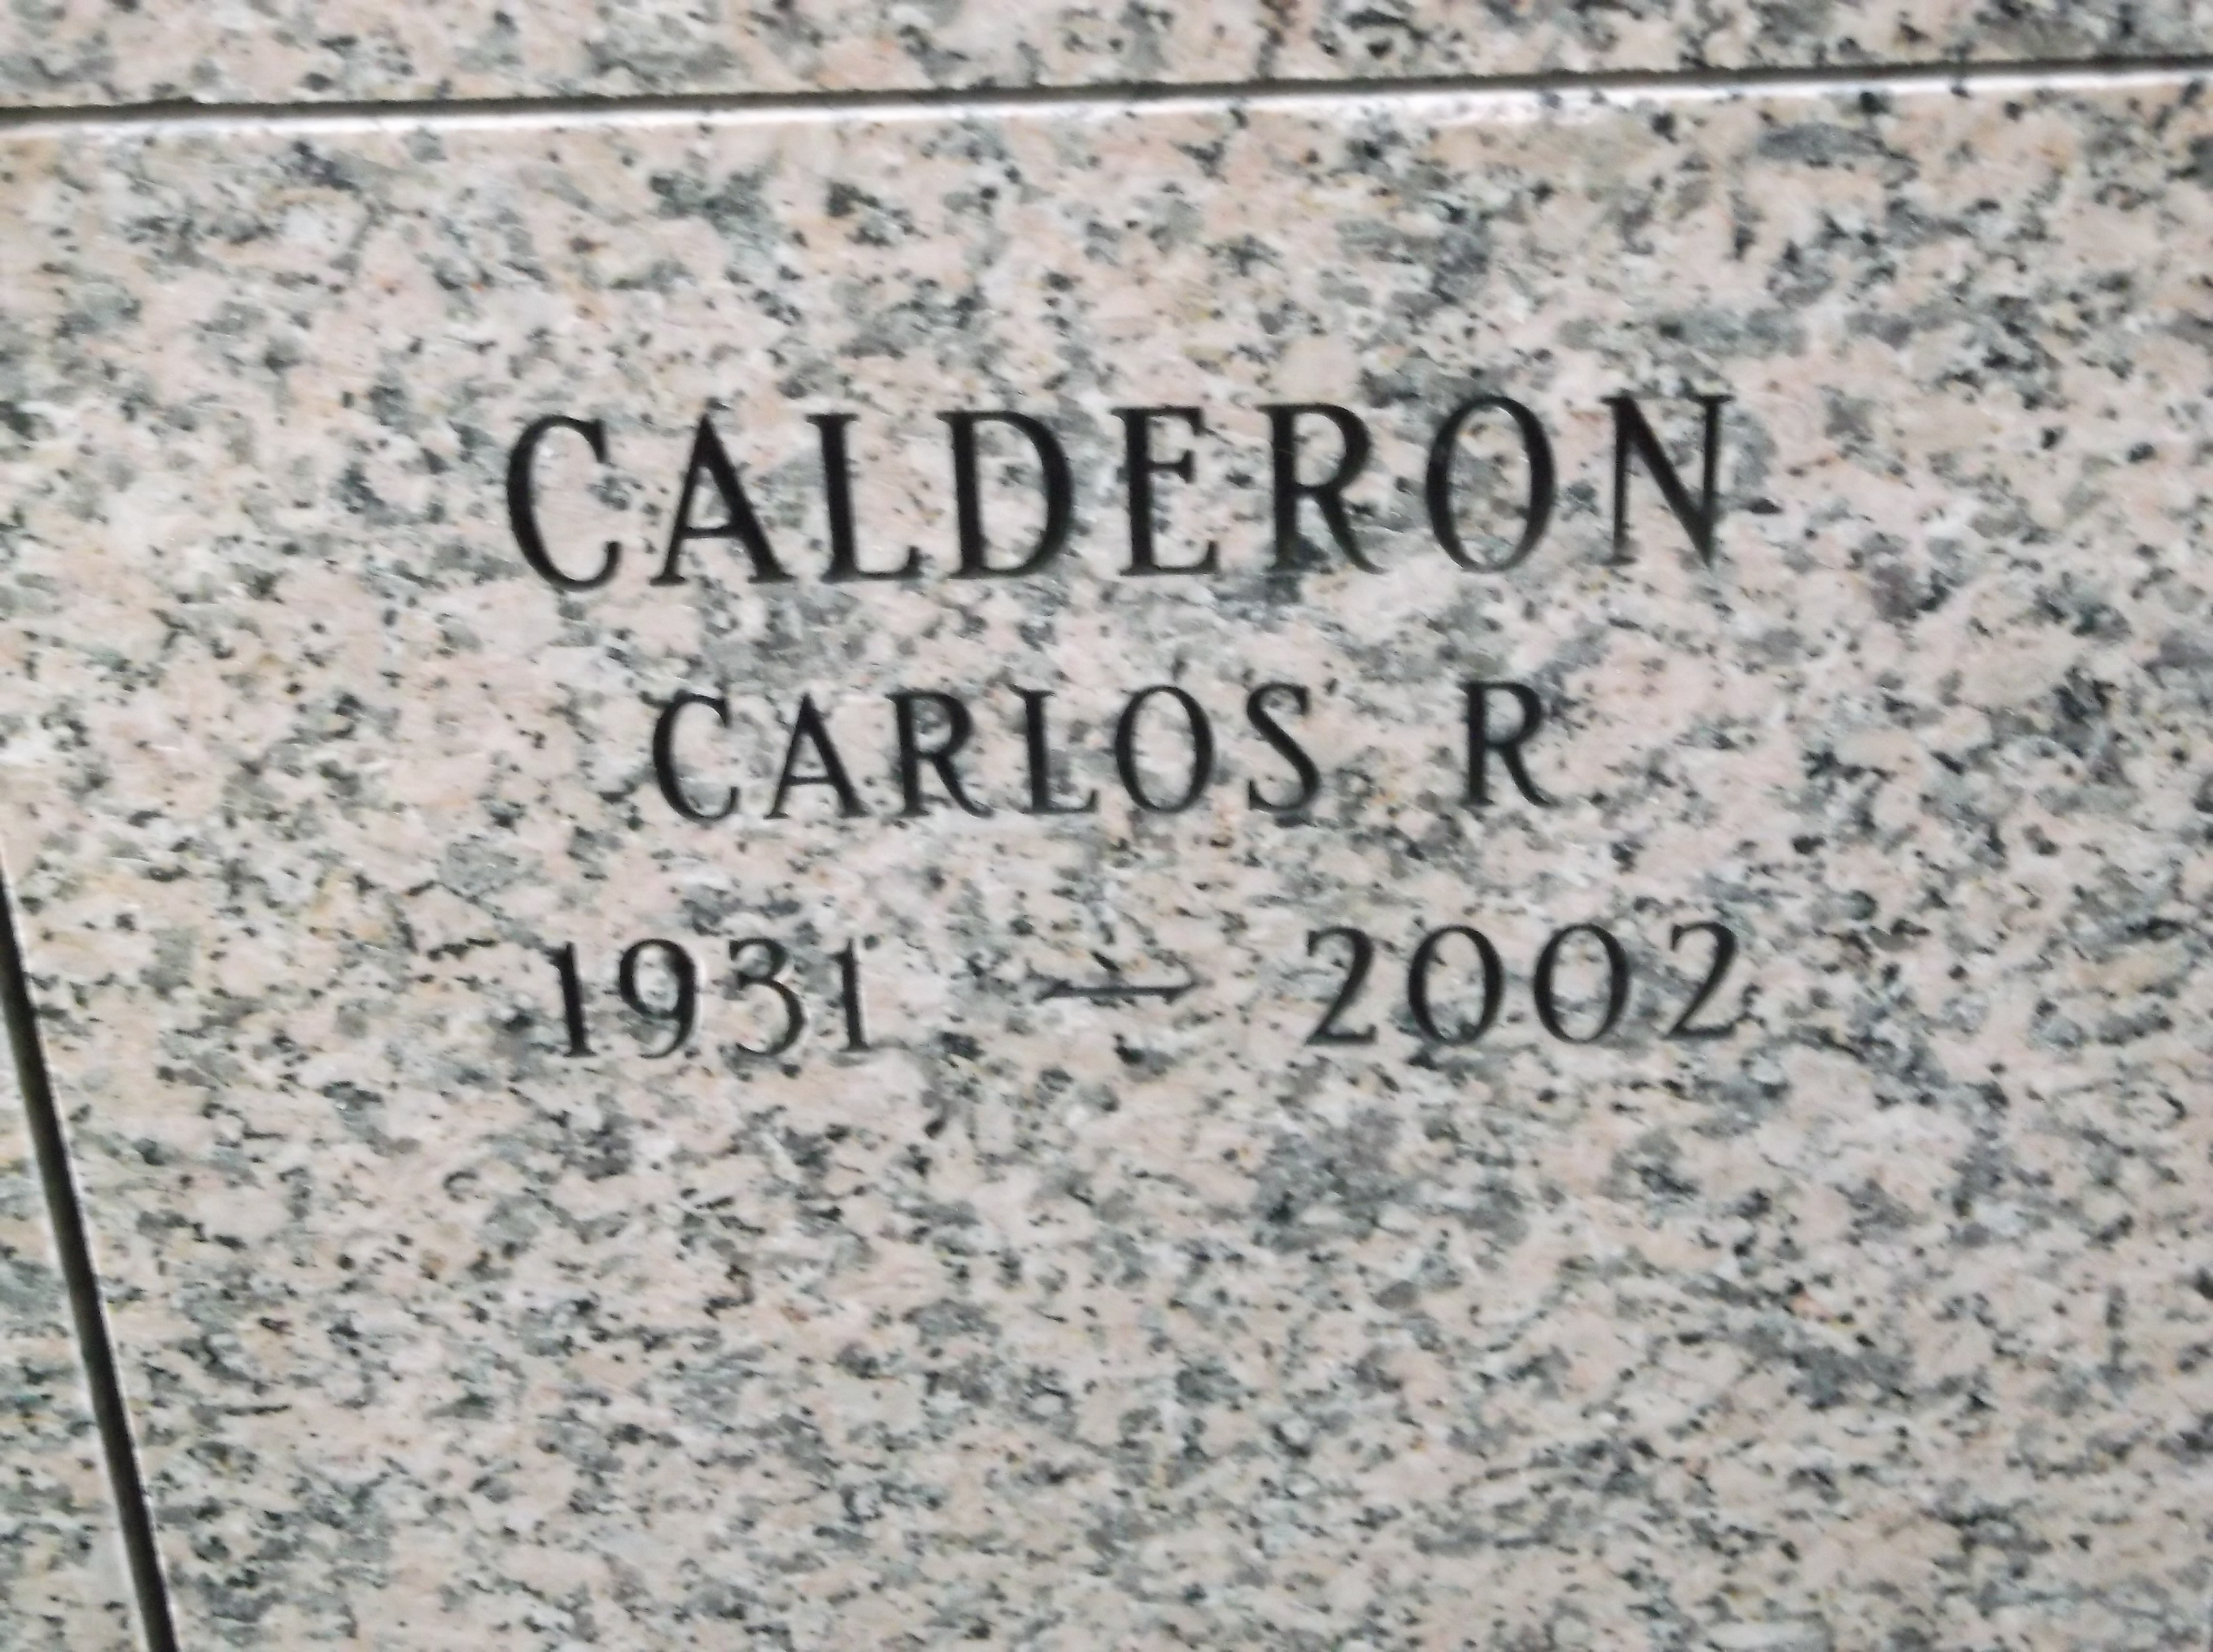 Carlos R Calderon